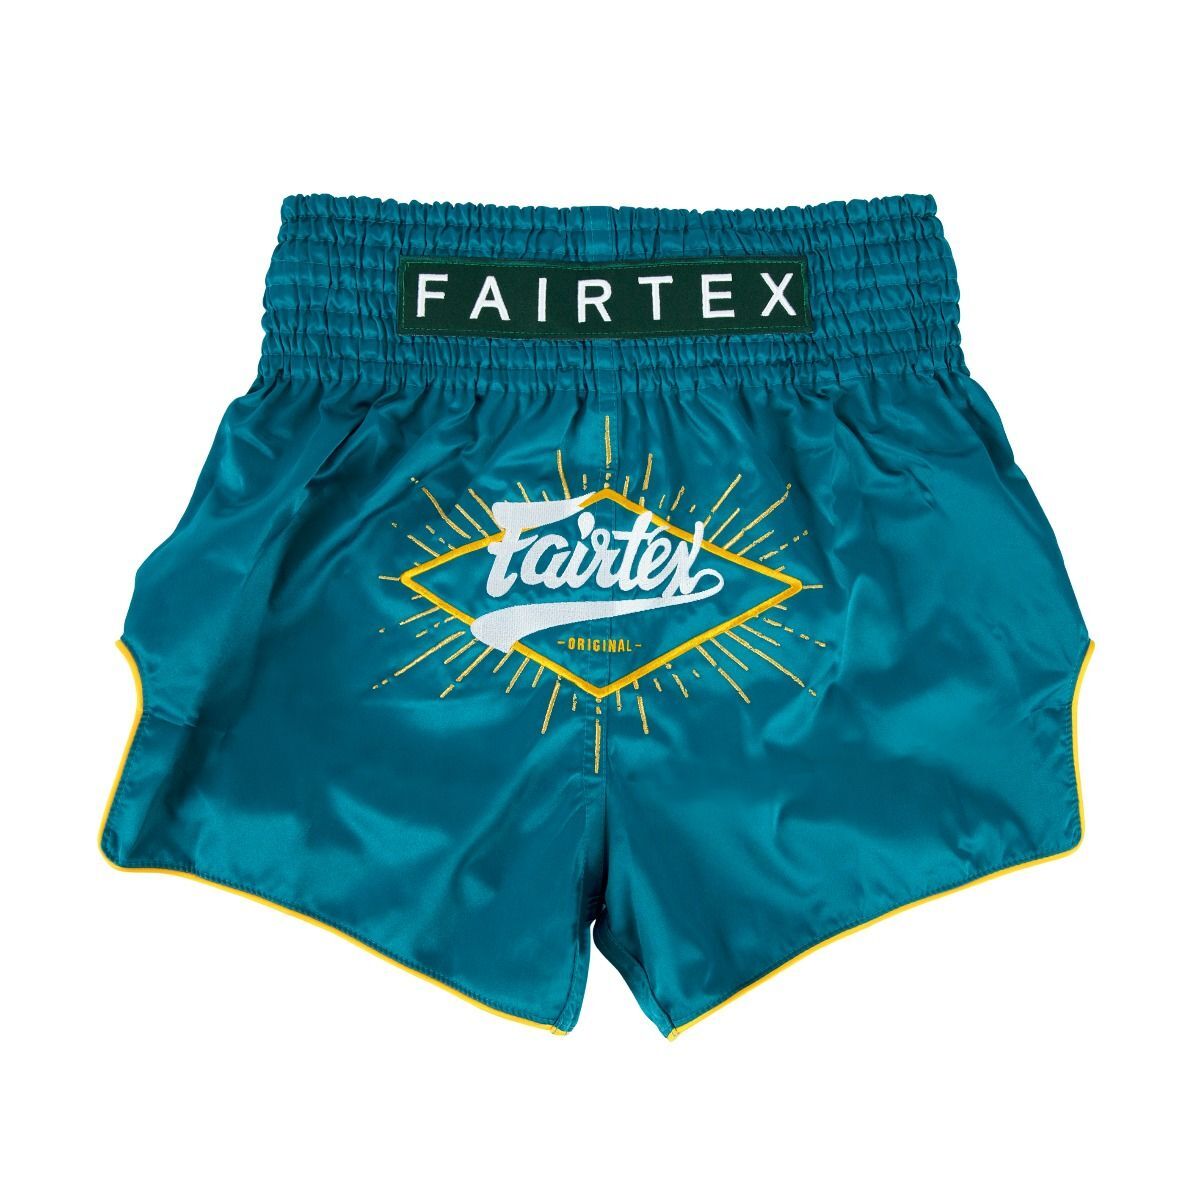 Fairtex Fairtex BS1903 Focus Muay Thai Shorts Black 